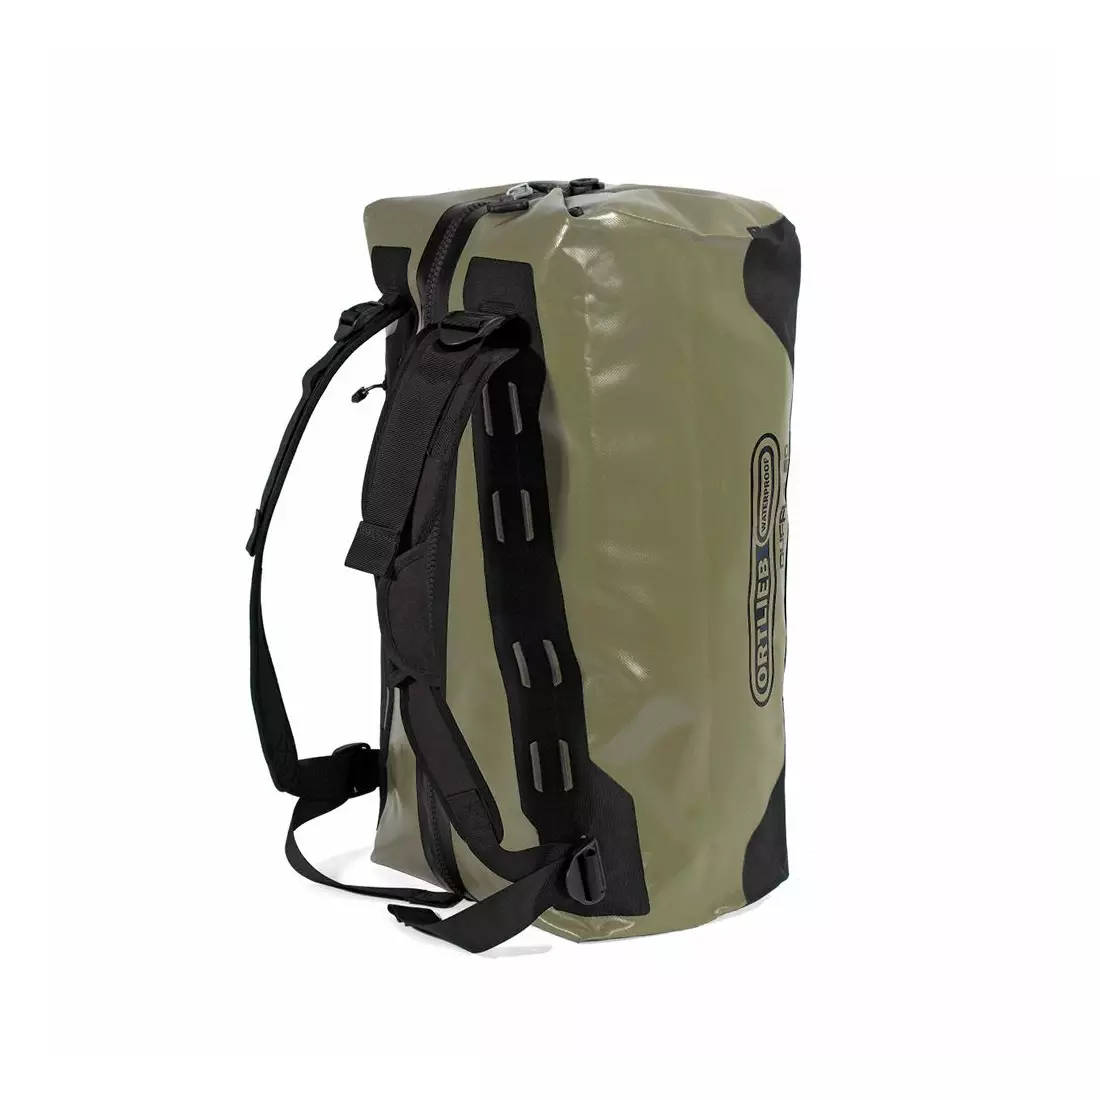 ORTLIEB  torba transportowa / plecak DUFFLE OLIVE-BLACK 40L O-K1475